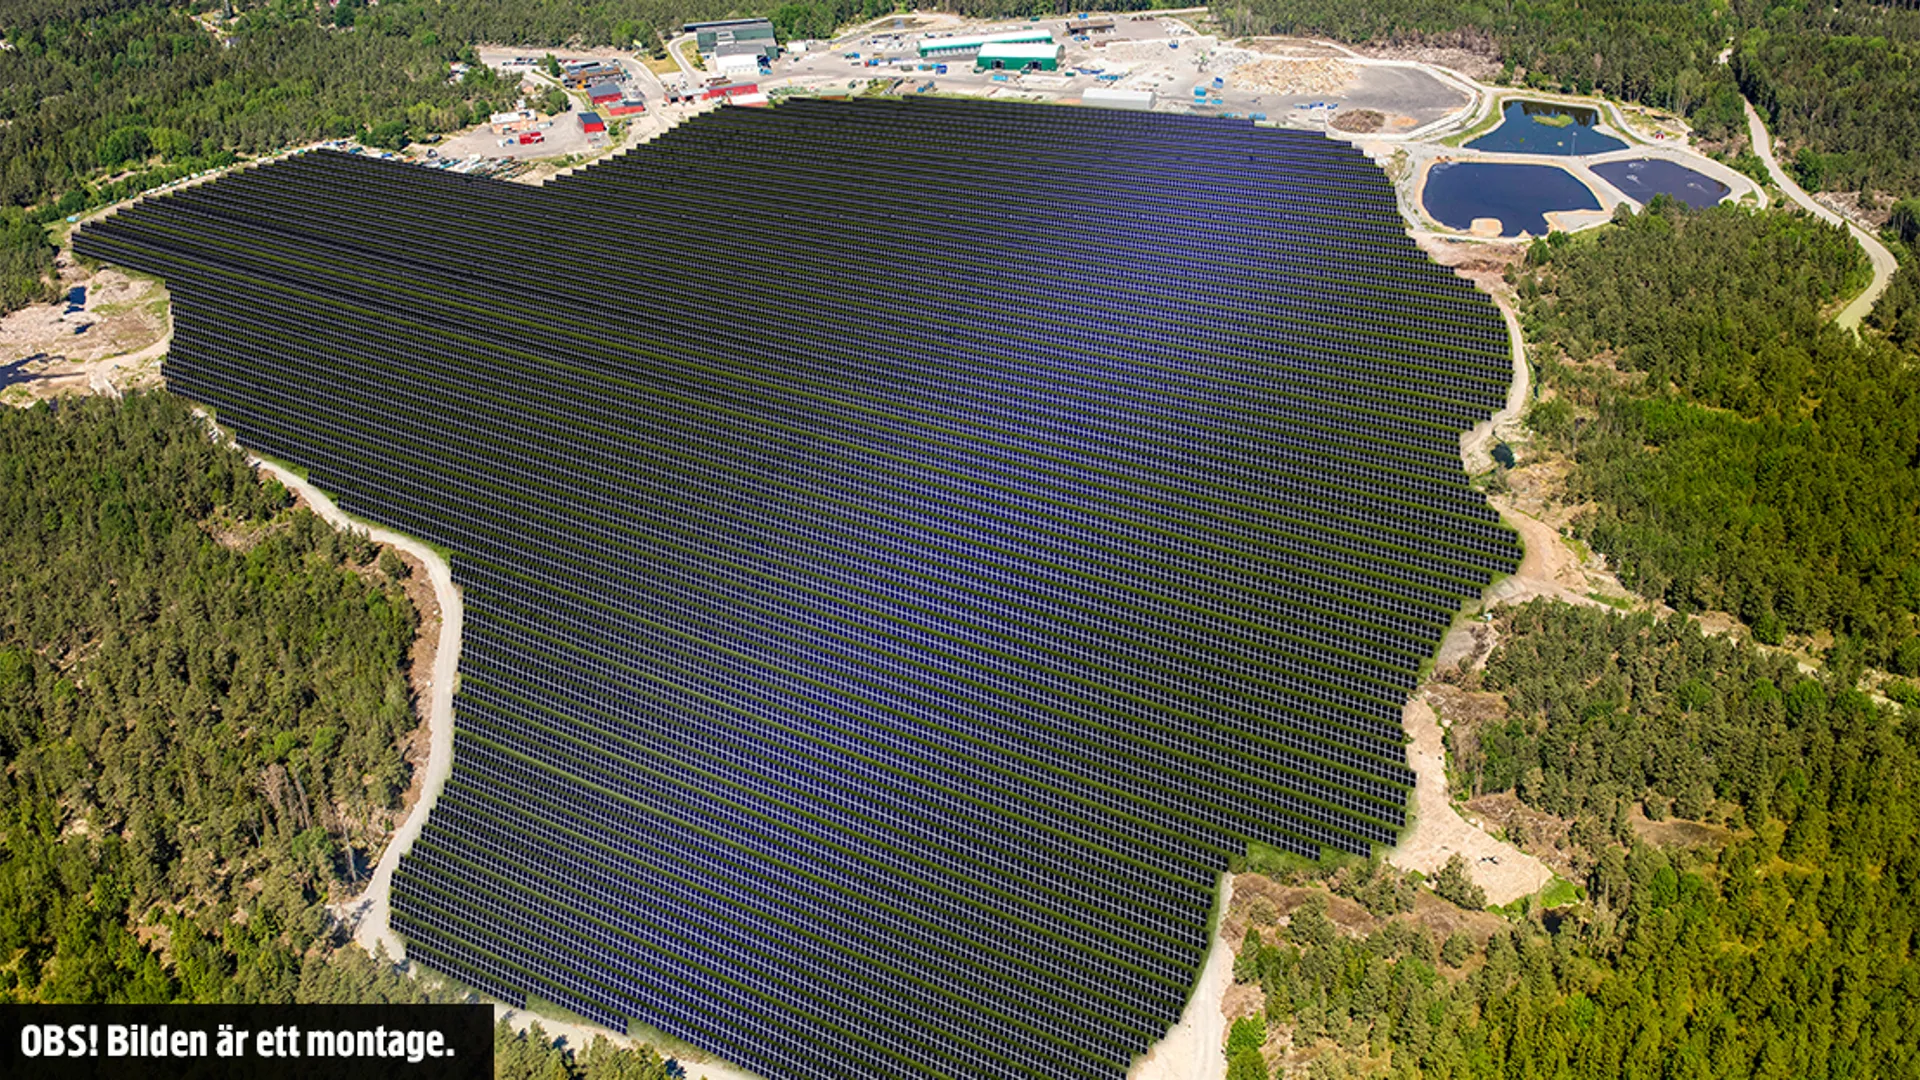 Montage på hur solcellsparken på Lilla Nyby ser ut. Solpaneler placerade över stor yta av deponin. 